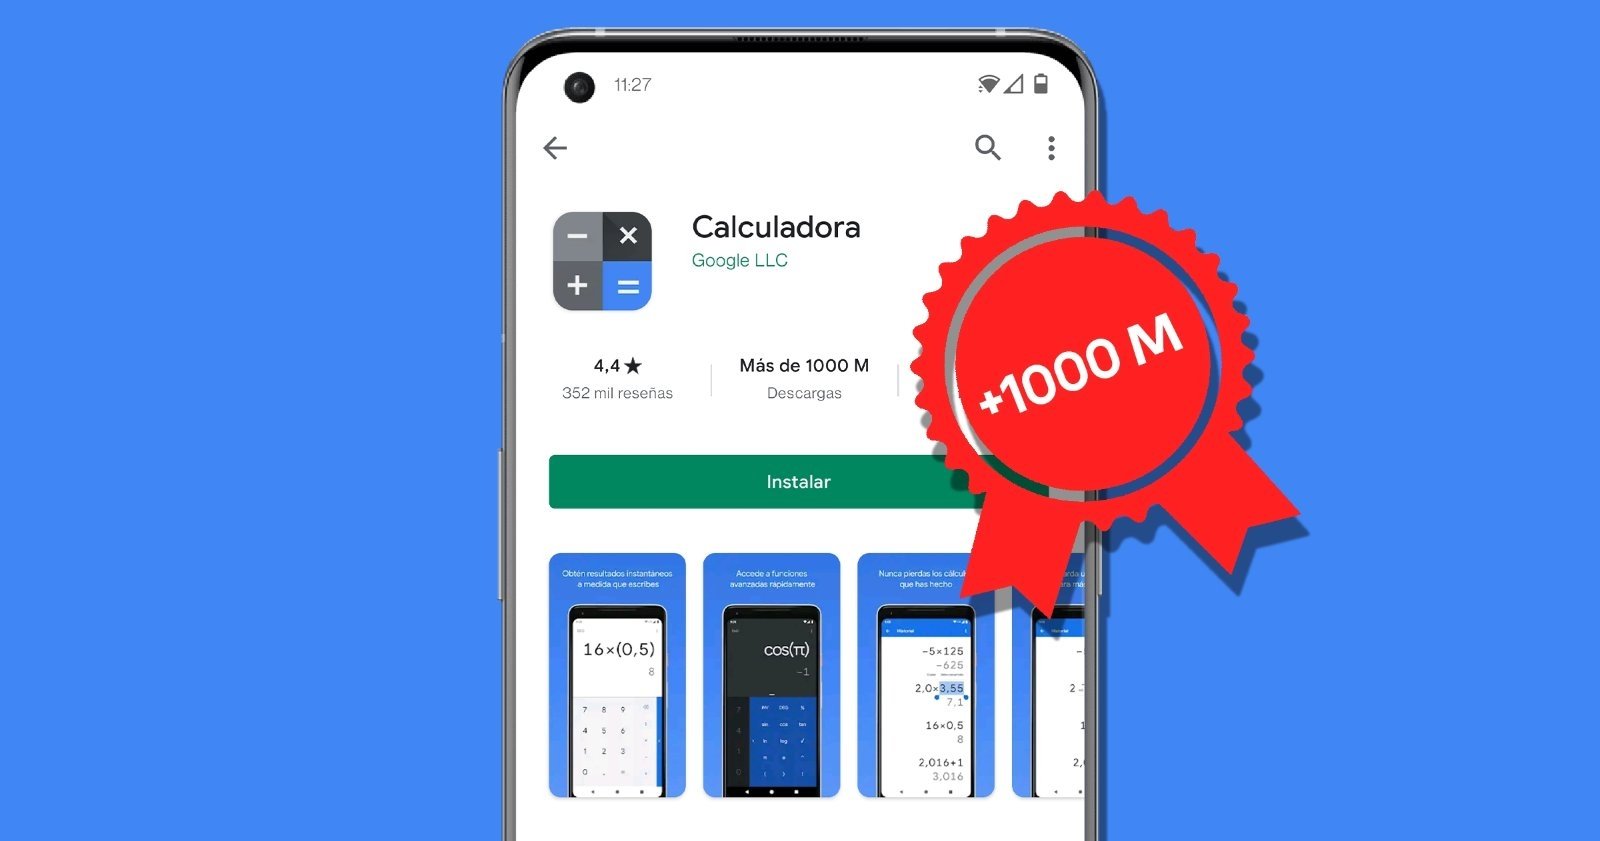 App de calculadora de Google con más de 1.000 millones de descargas